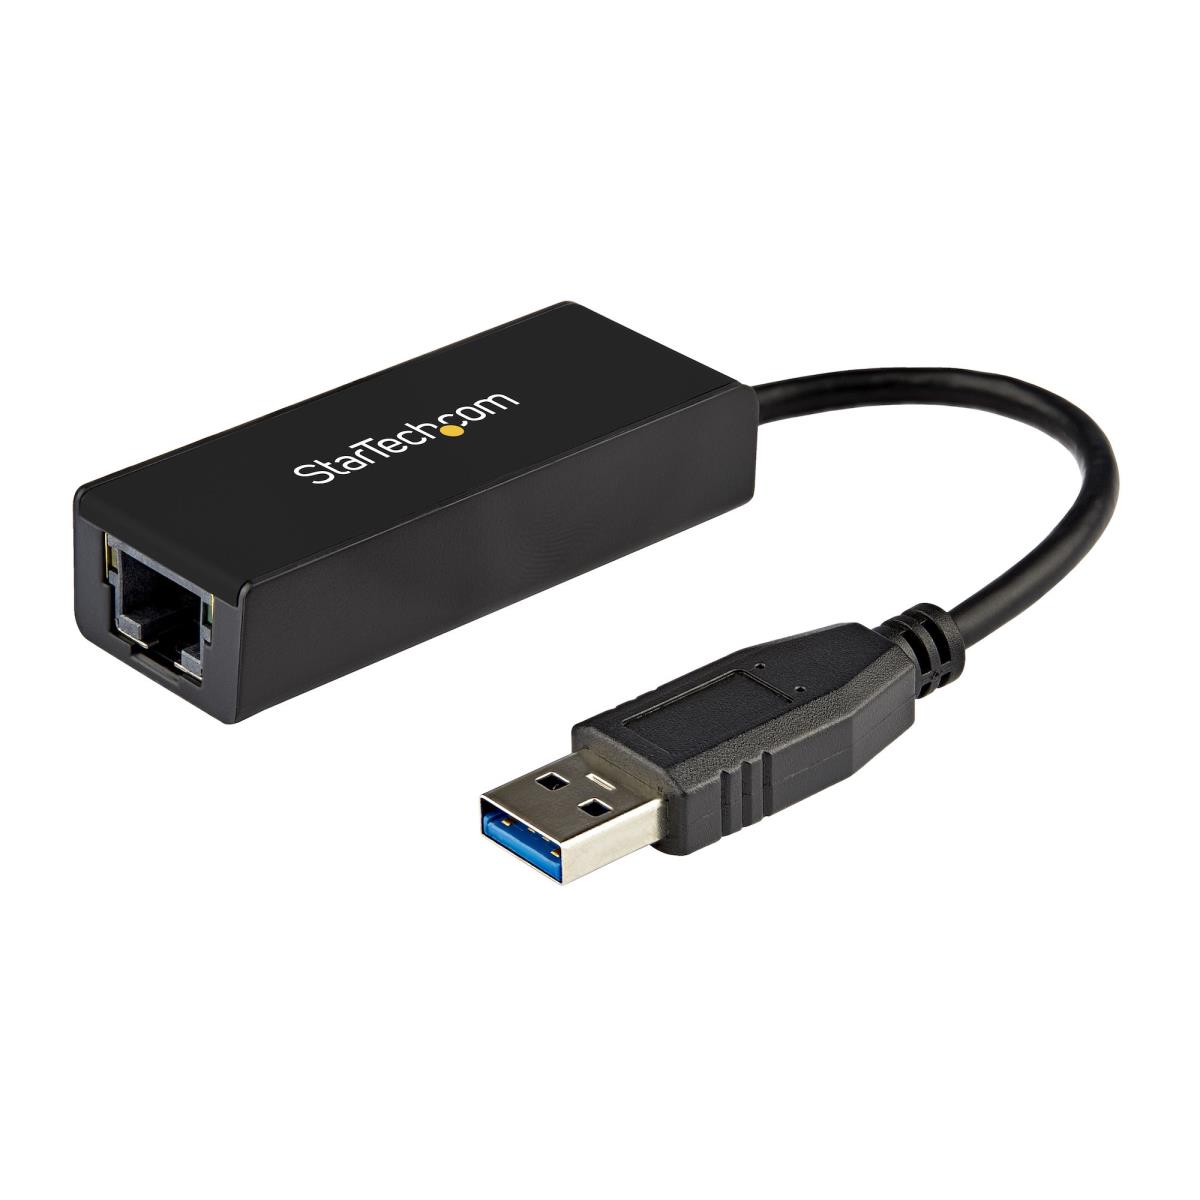   Basics USB 3.0 to 10/100/1000 Gigabit Ethernet Internet  Adapter, Black : Electronics